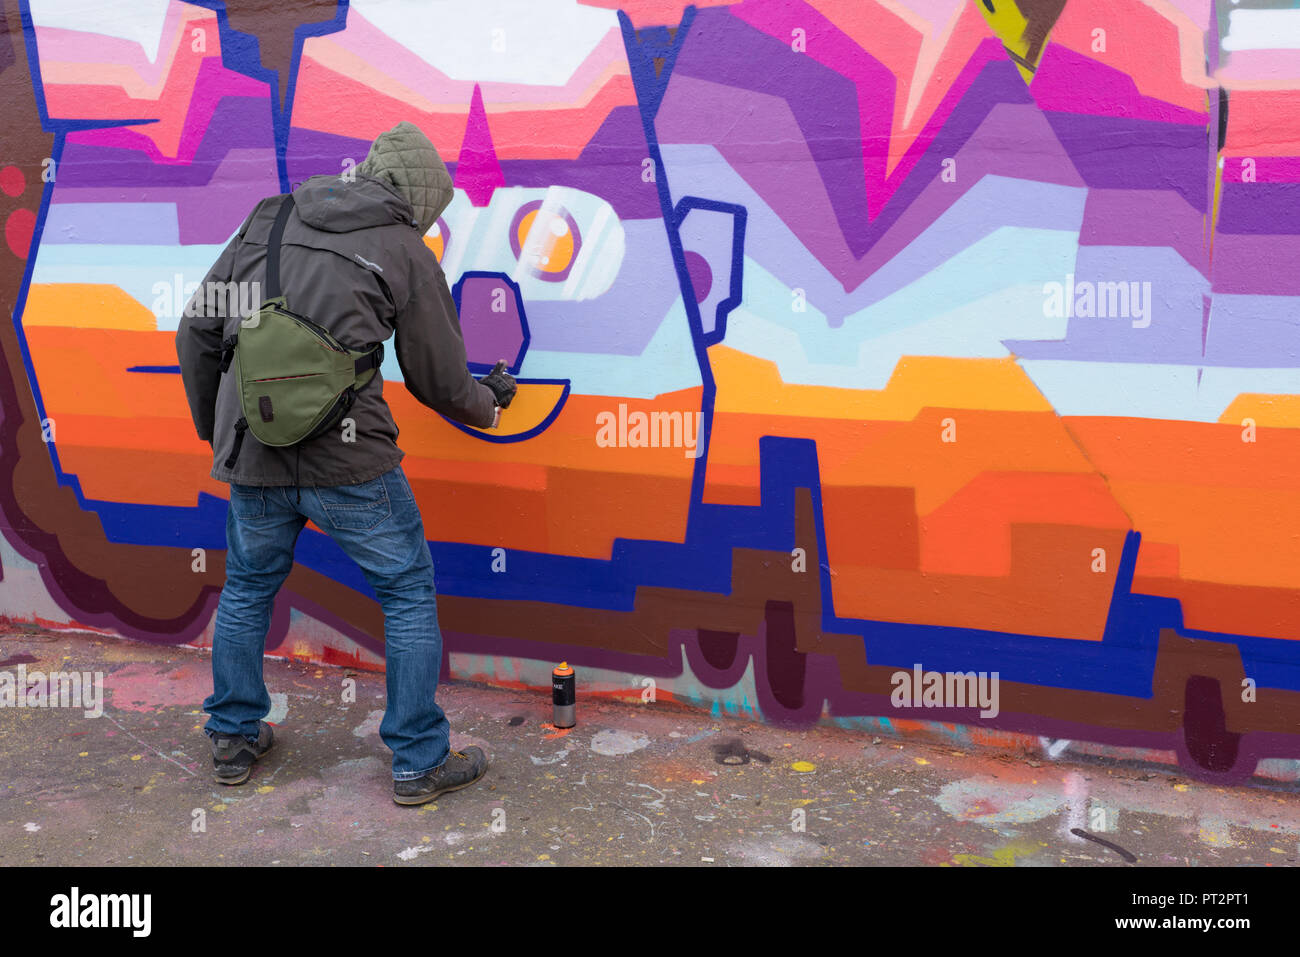 Künstler auf der Straße hart an neue Arbeit in der Brick Lane, East London, UK. Die Gegend ist ein Fest für Creatives täglich mit neuen Stücken Stockfoto